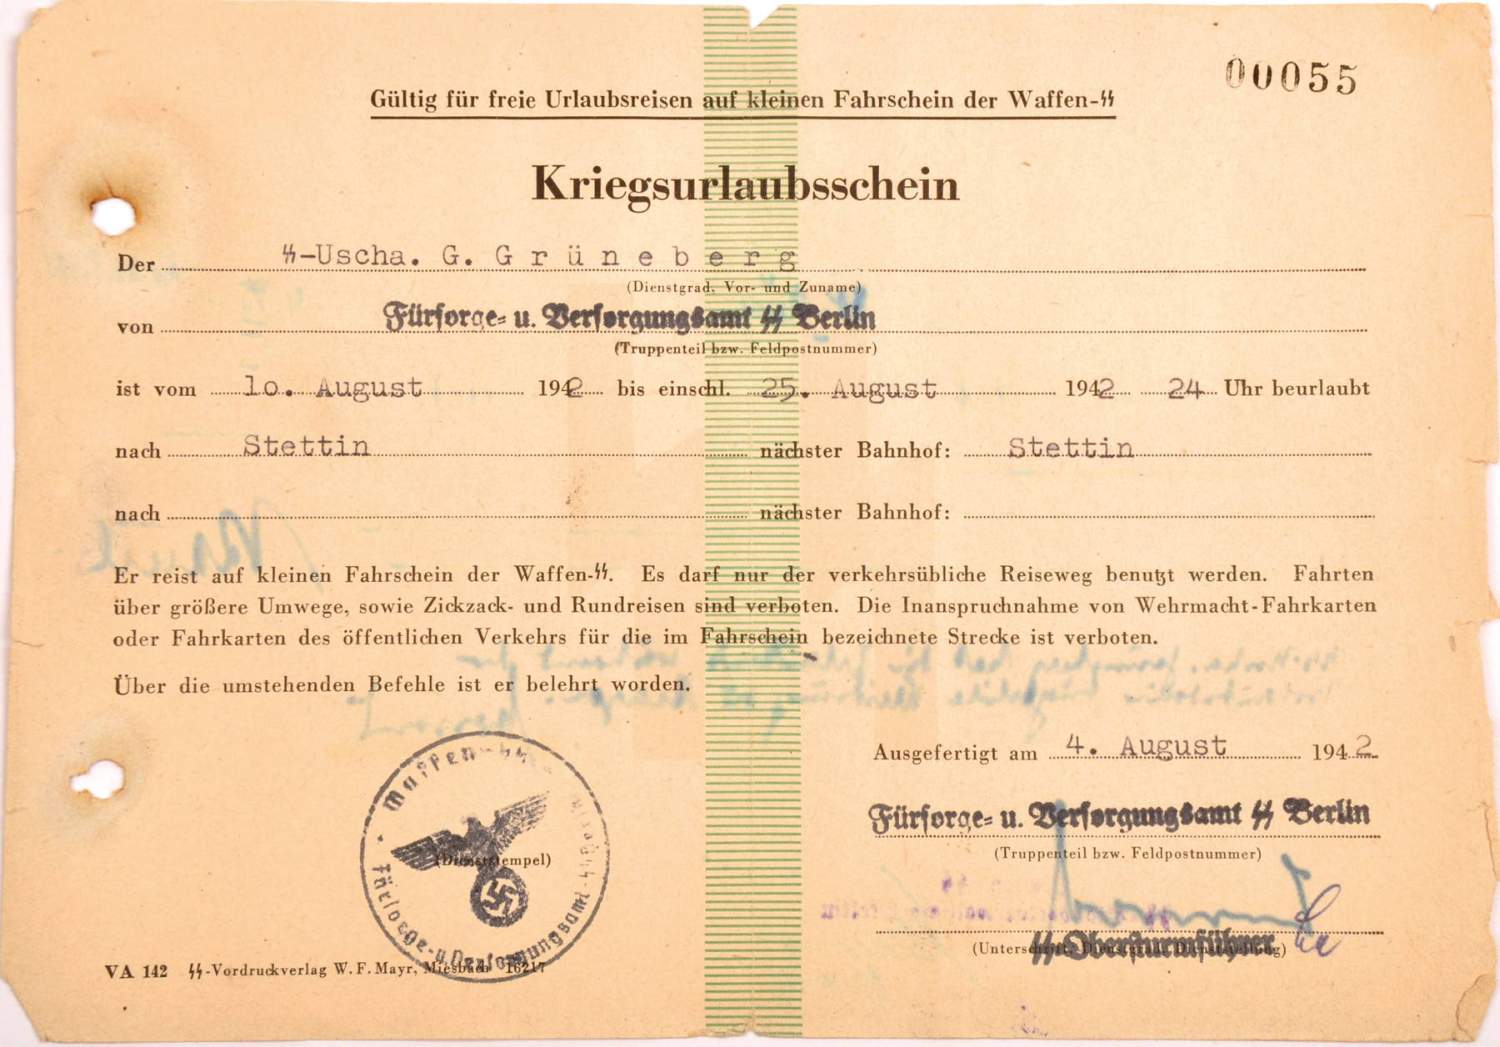 KRIEGS-URLAUBSSCHEIN, f. e. SS-Unterscharführer des Fürsorge- u. Versorgungsamts SS Berlin,